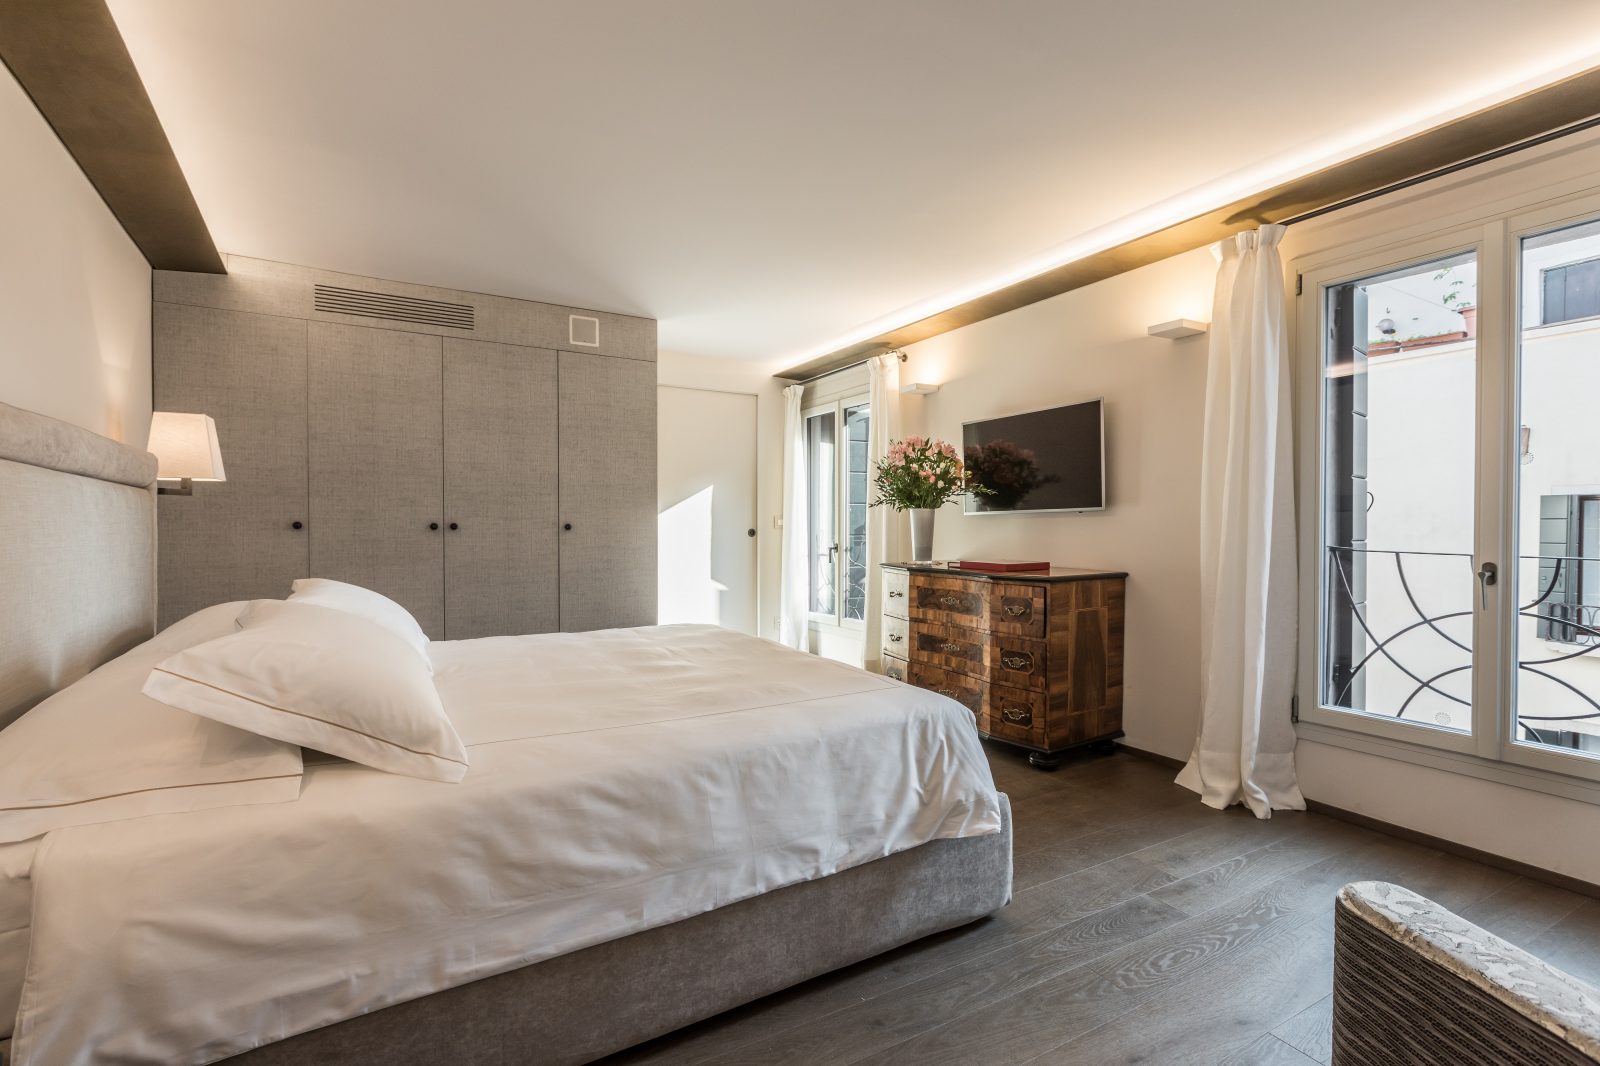 camera-letto-matrimoniale-appartamento-rafano-vista-finestra-tv-design-bianco-venezia-palazzo-morosini